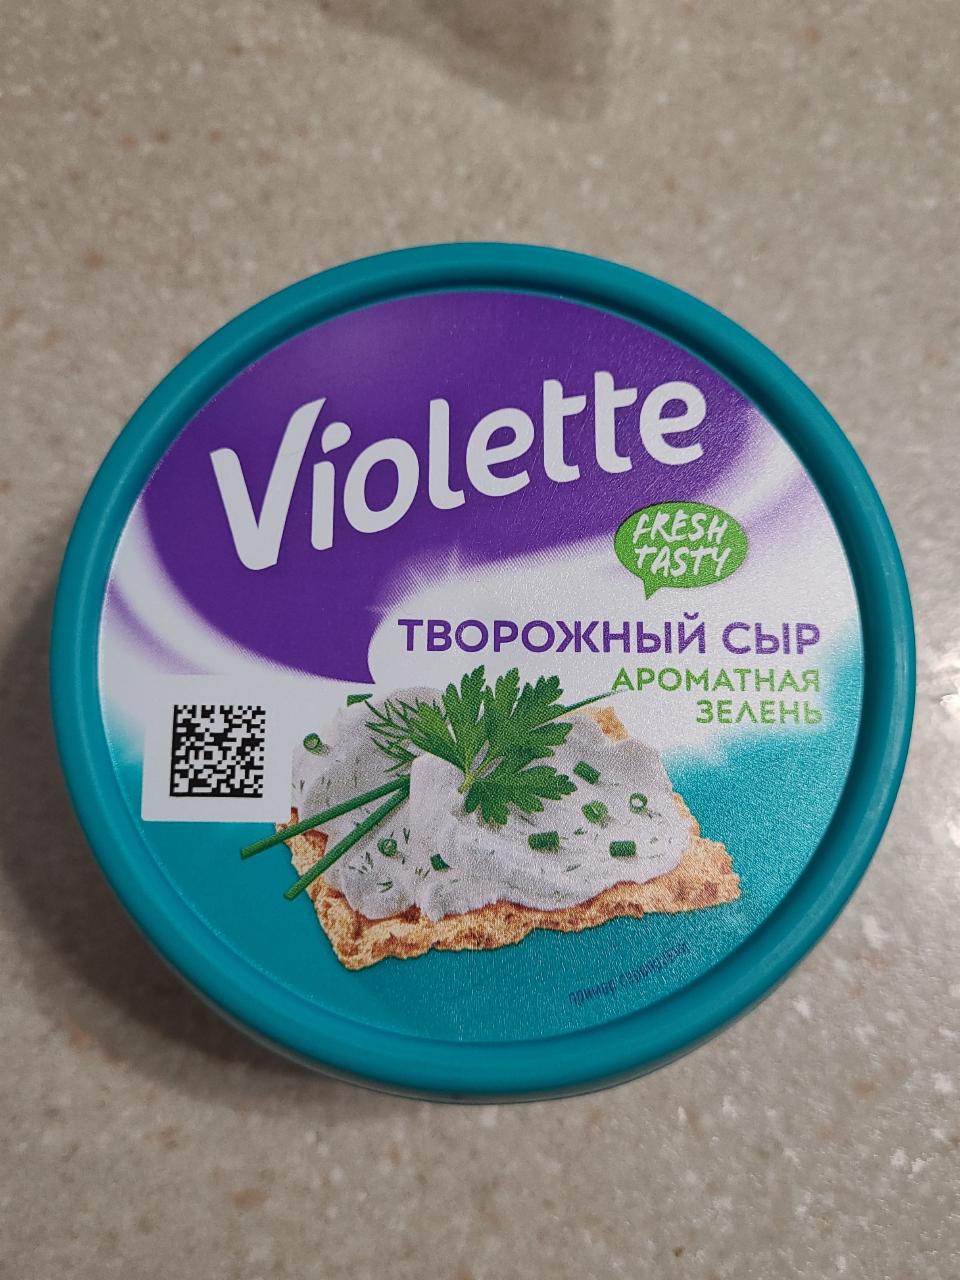 Фото - Сыр творожный Ароматная зелень 70% Виолетта Violette